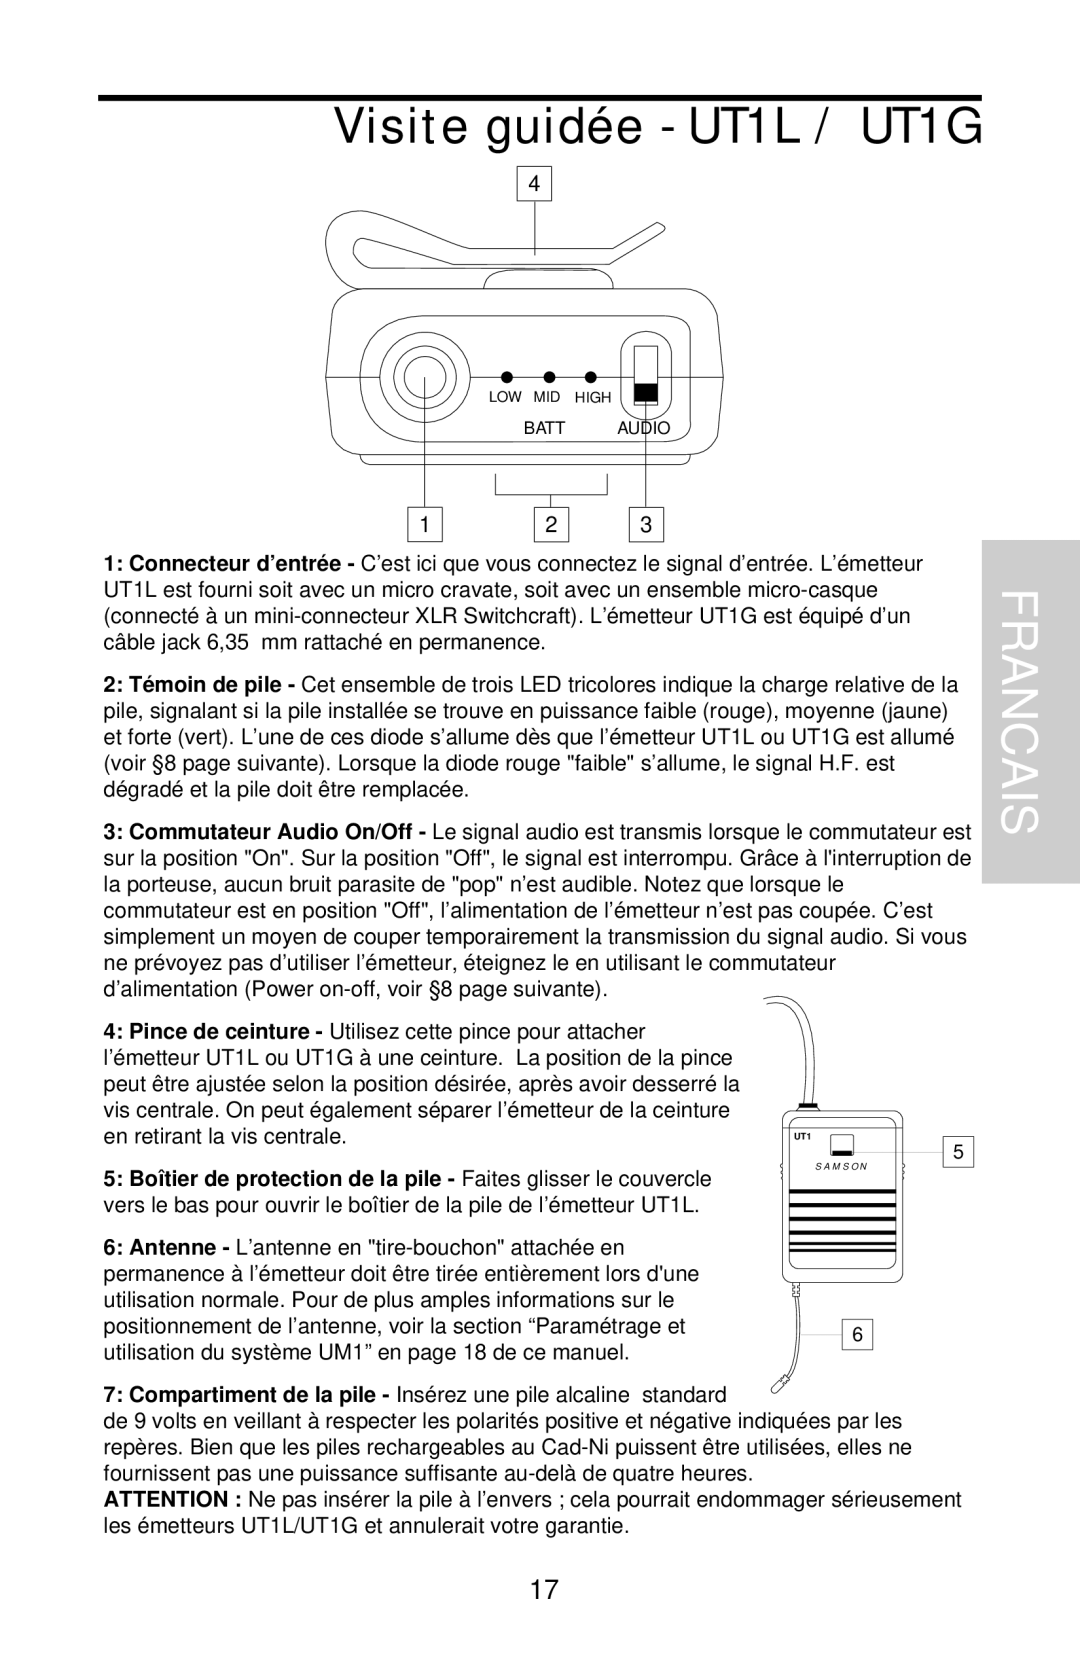 Samson UHF Series One owner manual Visite guidée - UT1L / UT1G, Francais 